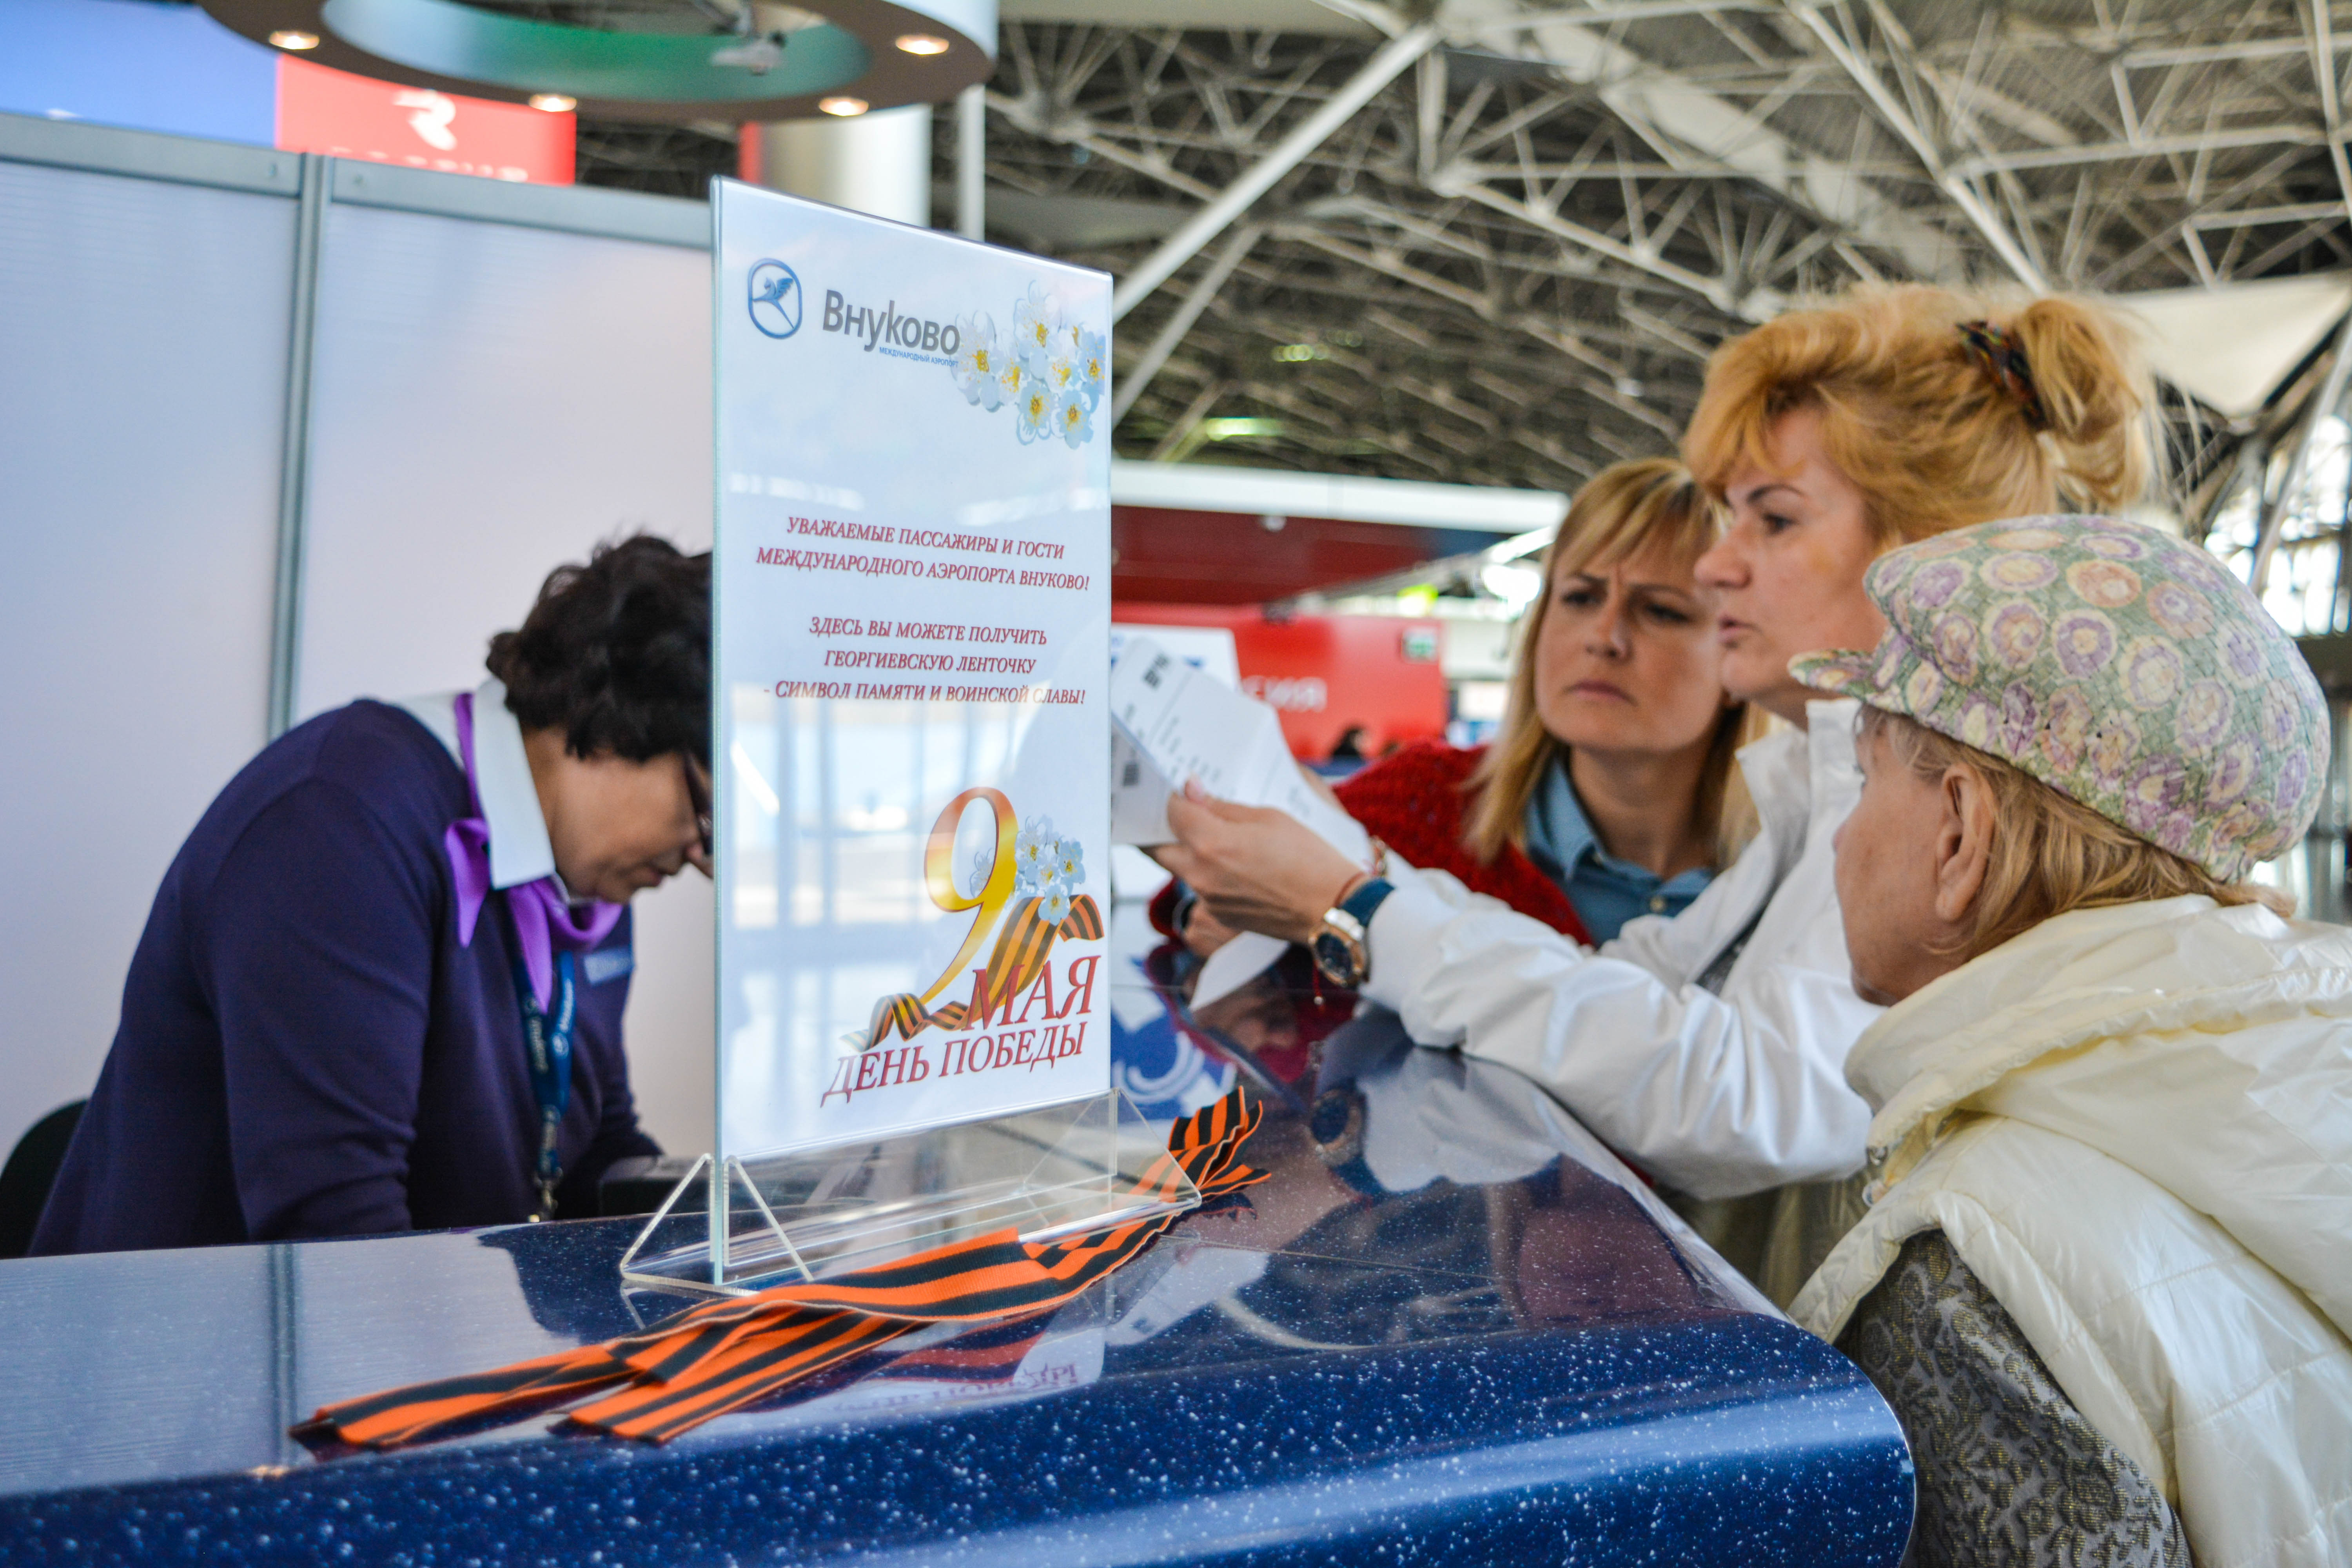 Пассажиры смогут получить Георгиевские ленточки в аэропорту Внуково | Международный аэропорт Внуково